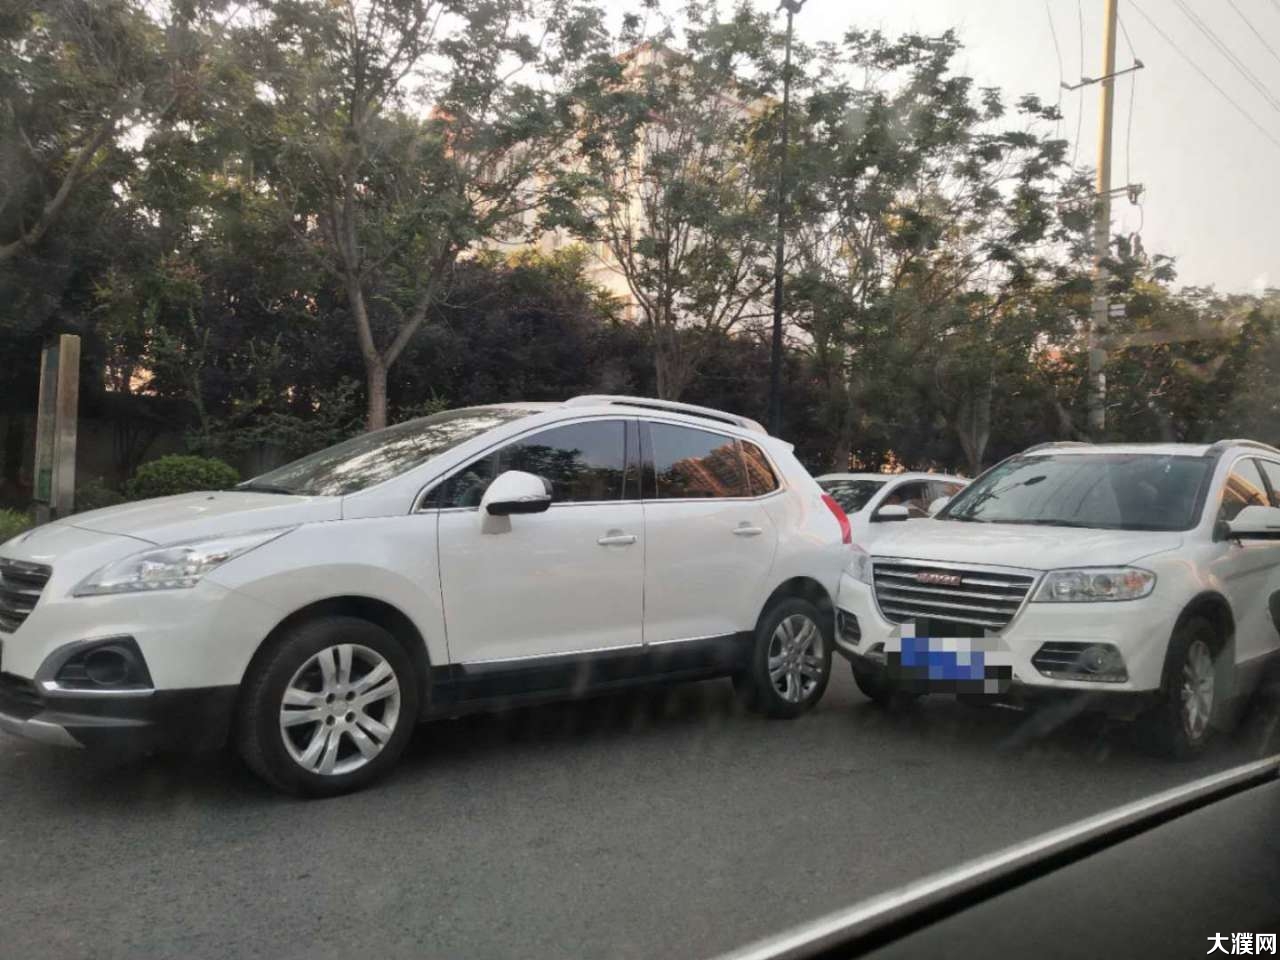 濮阳长庆路发生车祸,两辆轿车追尾,现场.